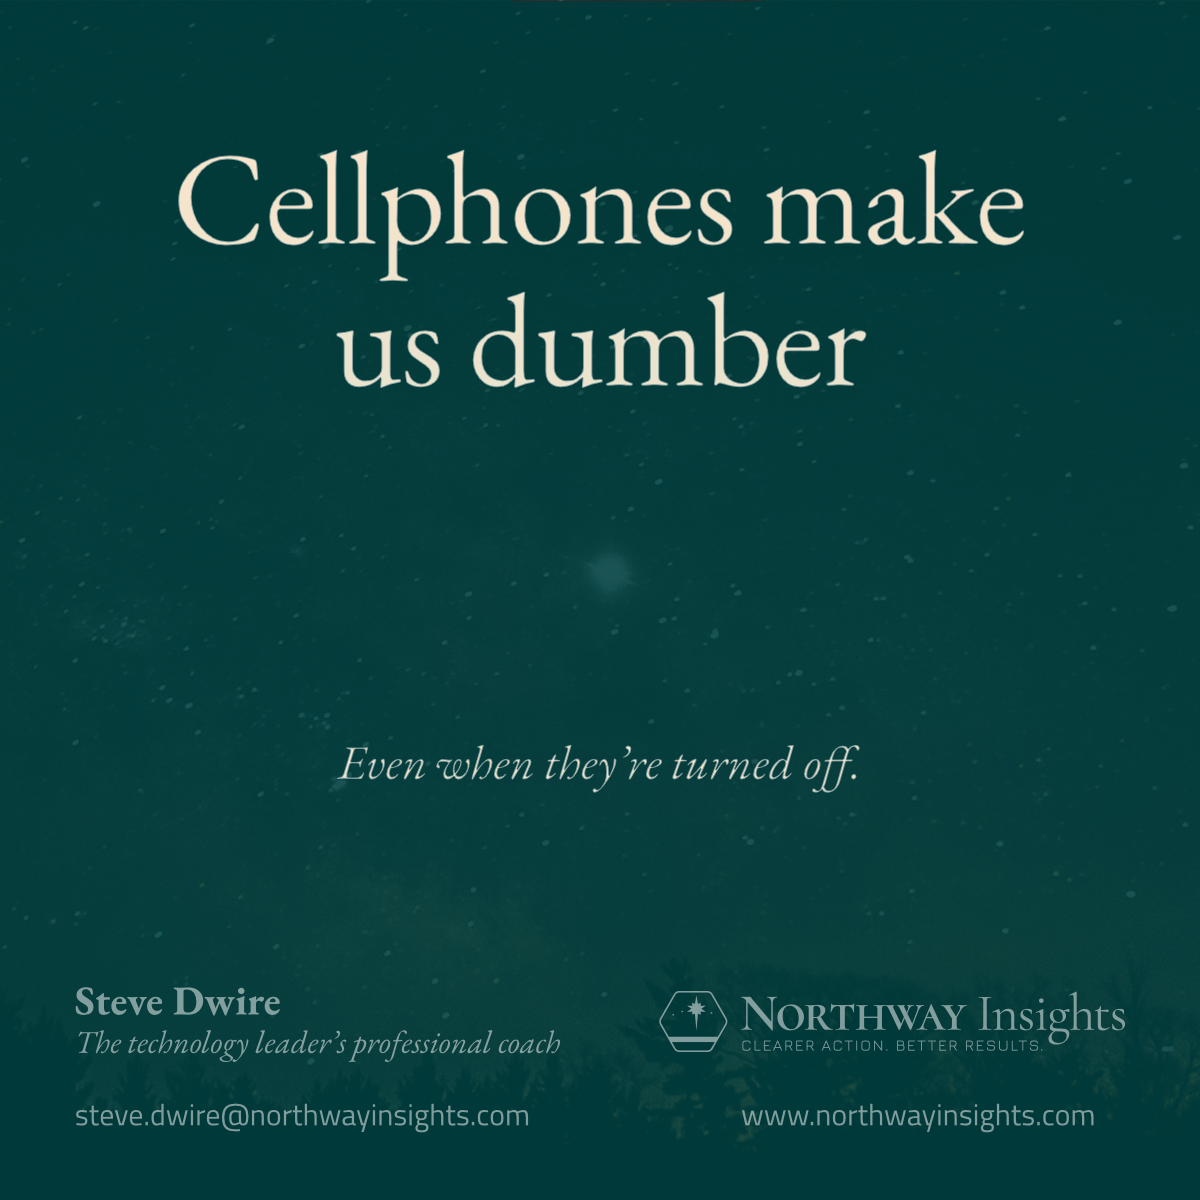 Cellphones make us dumber